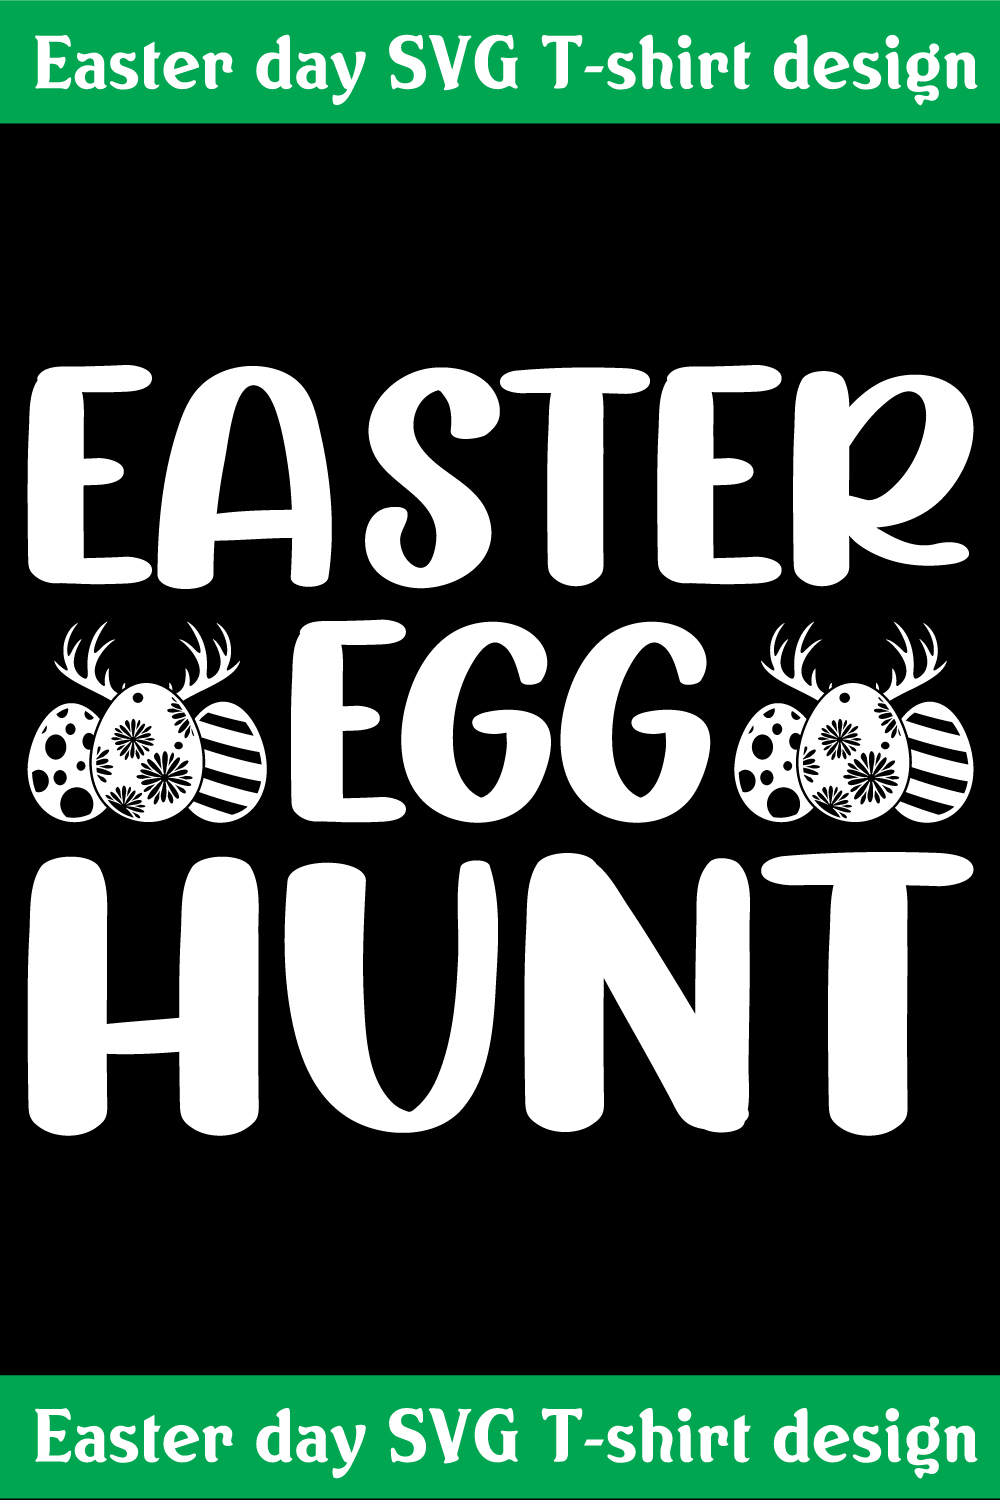 Easter egg hunt SVG T-shirt design pinterest preview image.